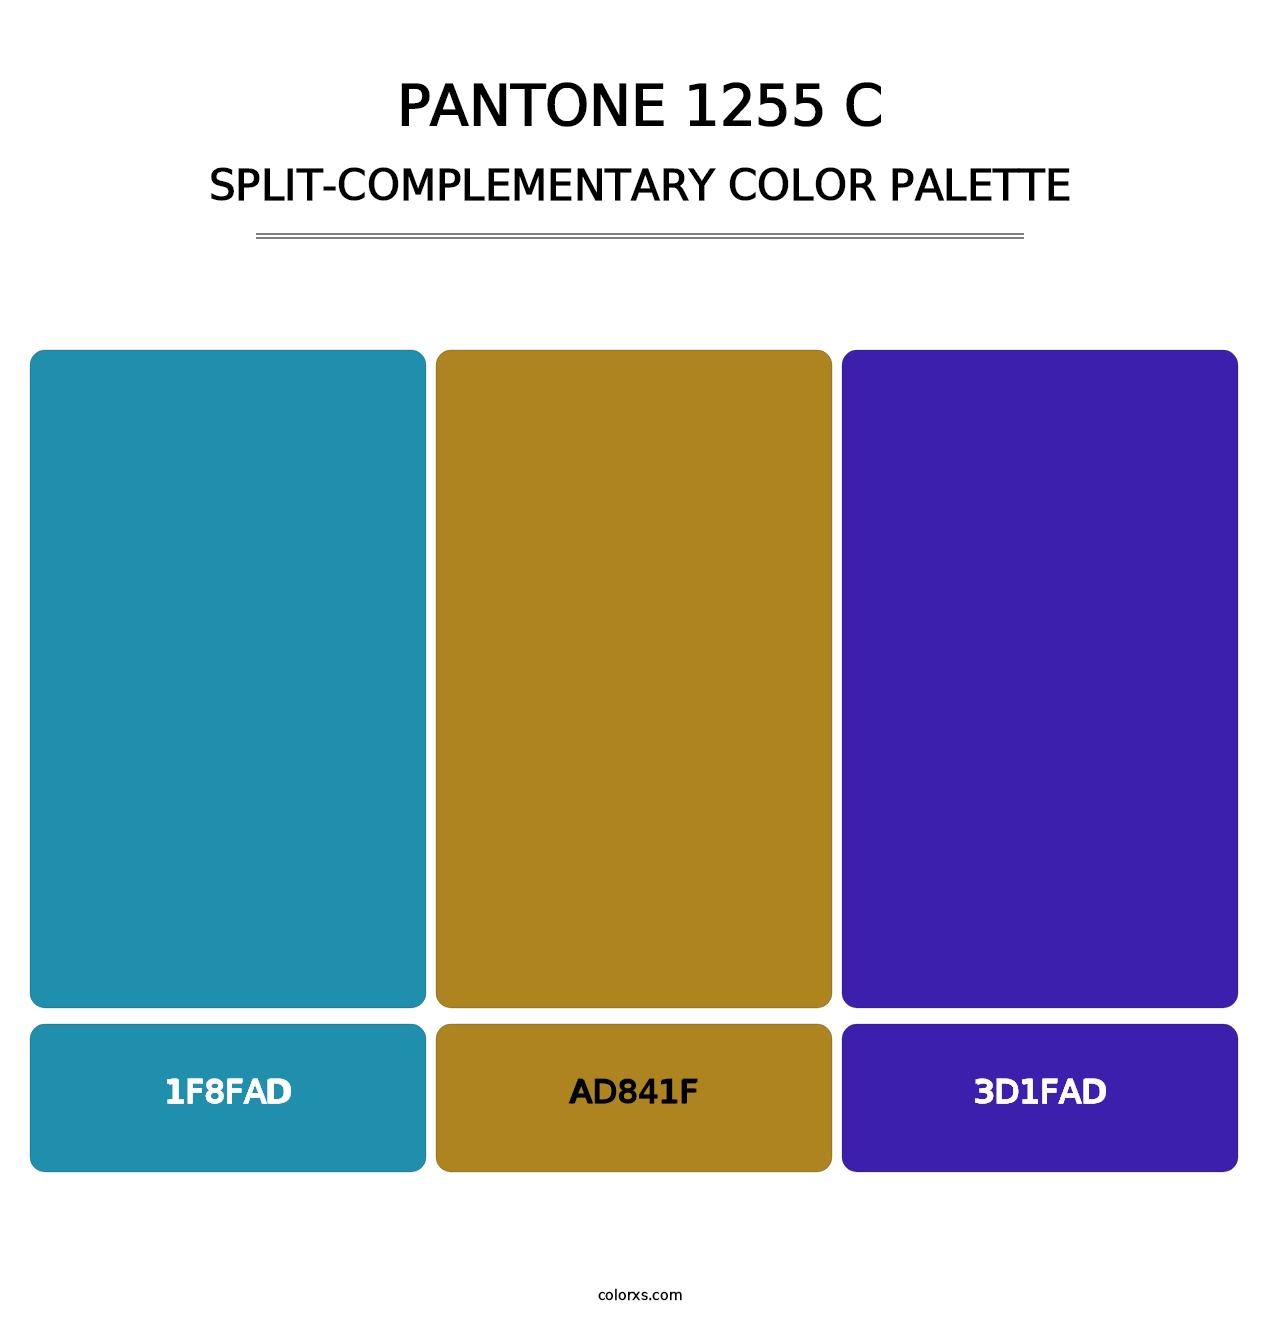 PANTONE 1255 C - Split-Complementary Color Palette